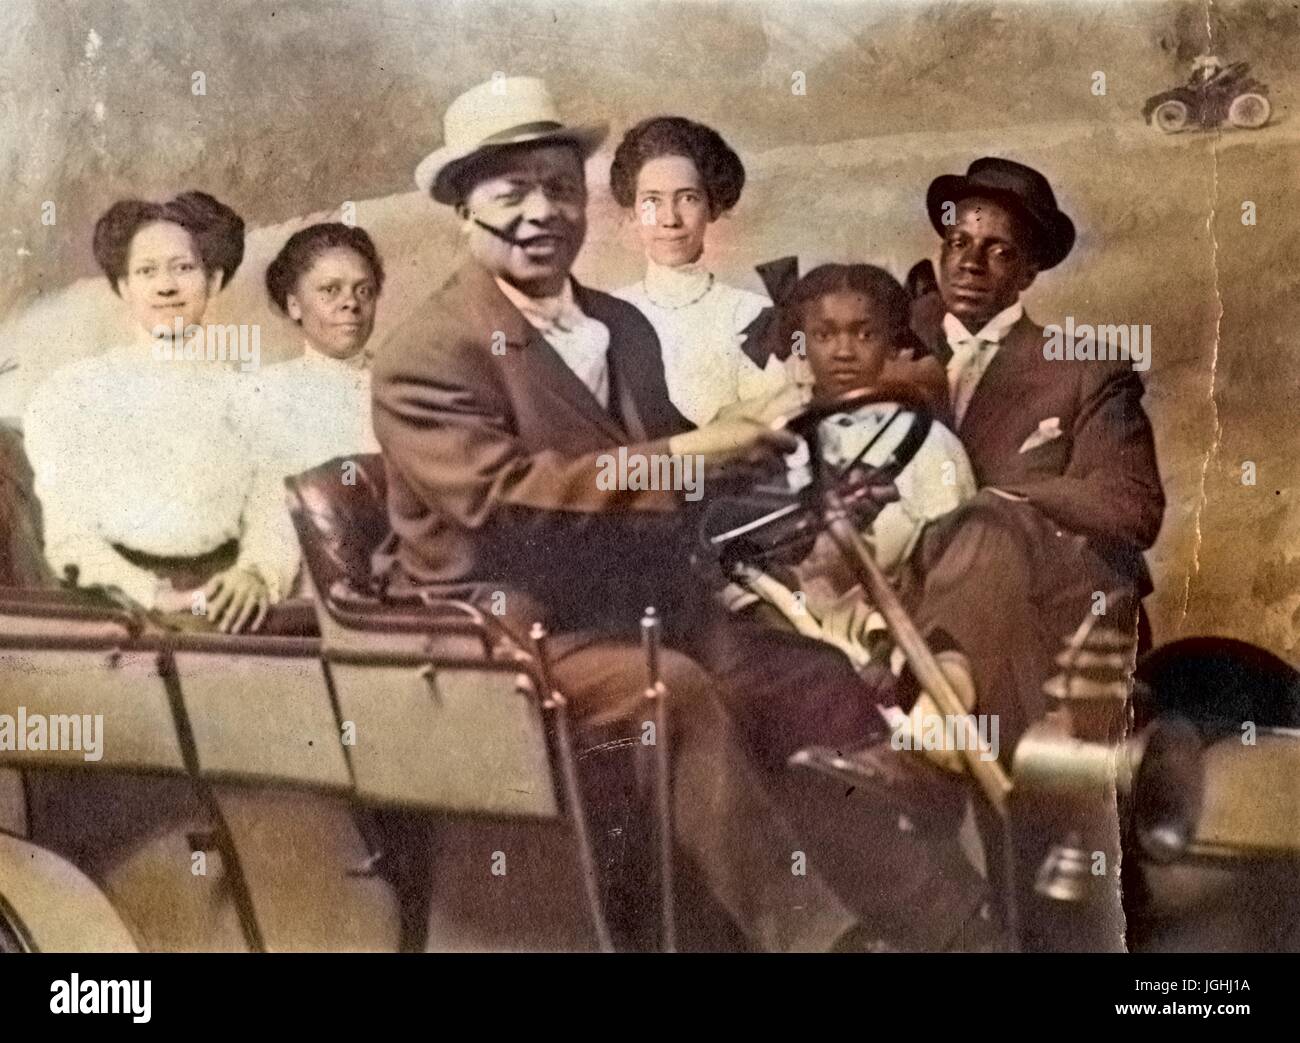 Retrato de familia afroestadounidense, con automóvil, en el estudio fotográfico, 1930. Nota: la imagen ha sido coloreada digitalmente mediante un proceso moderno. Los colores pueden no ser exactos del período. Foto de stock